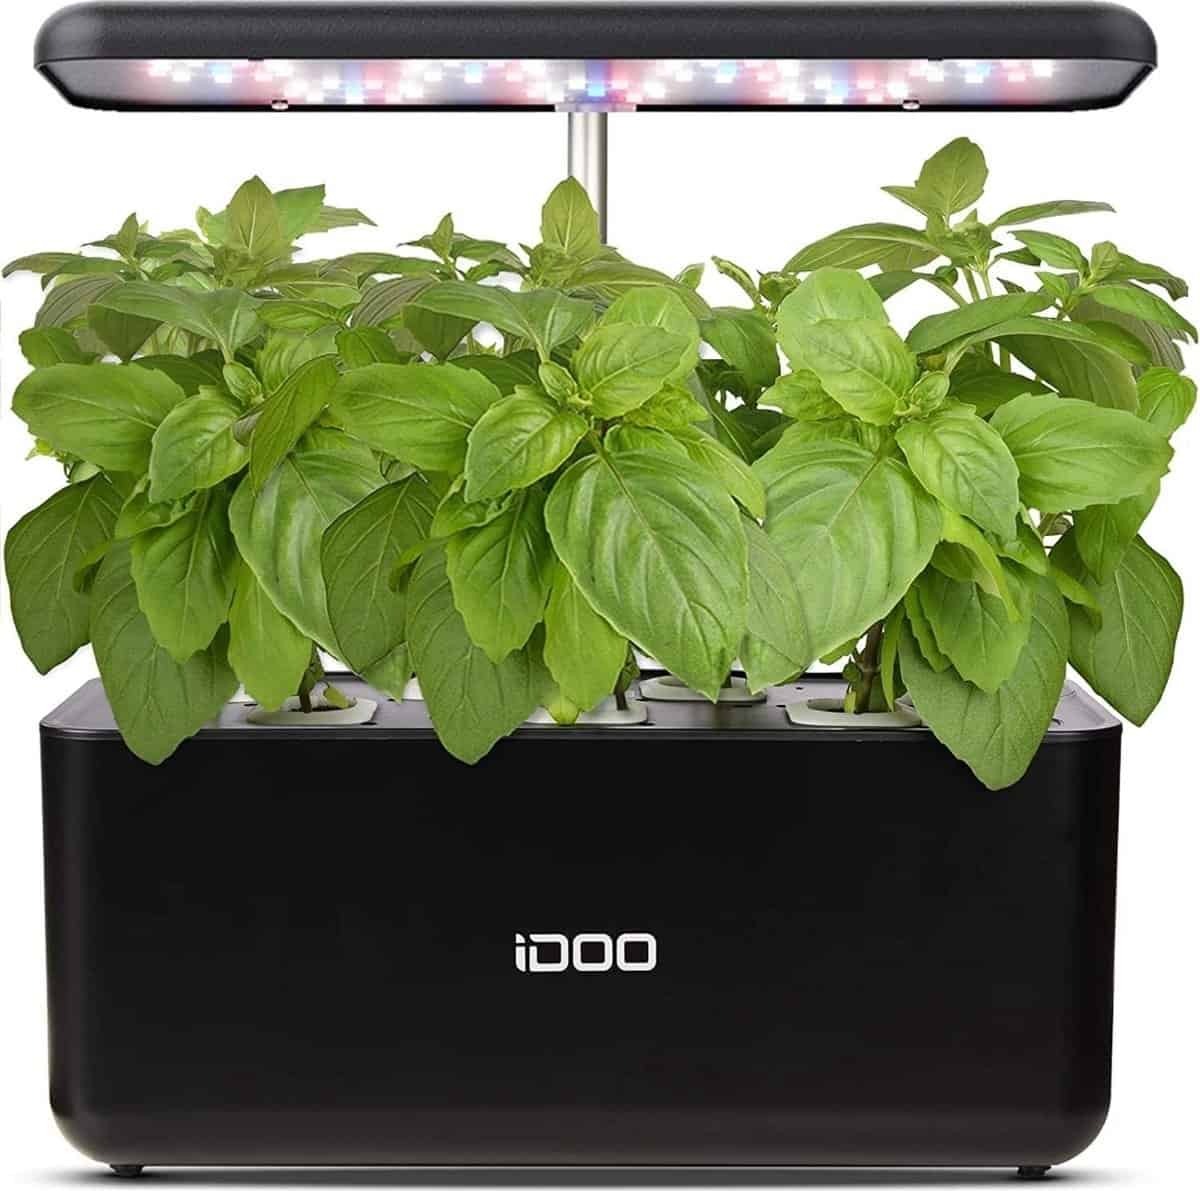 Beste kruidenbak voor binnen: iDOO Smart Indoor Garden